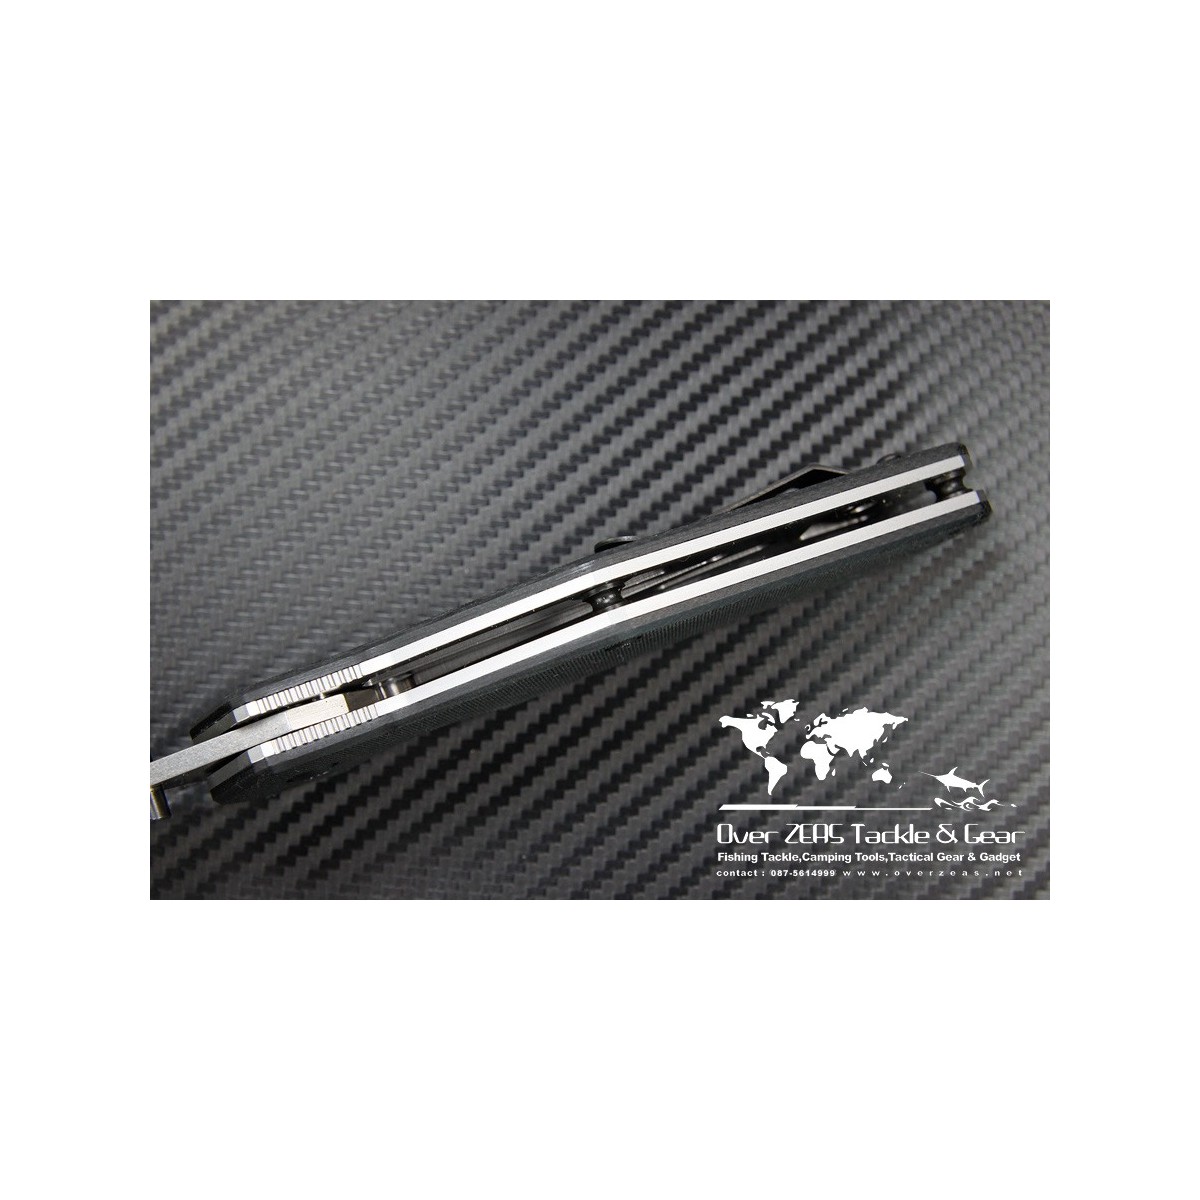 มีดพับ Zero Tolerance (ZT) Model 0700 Folder 3.375" S30V Tanto Stonewash Blade, G10 Handles